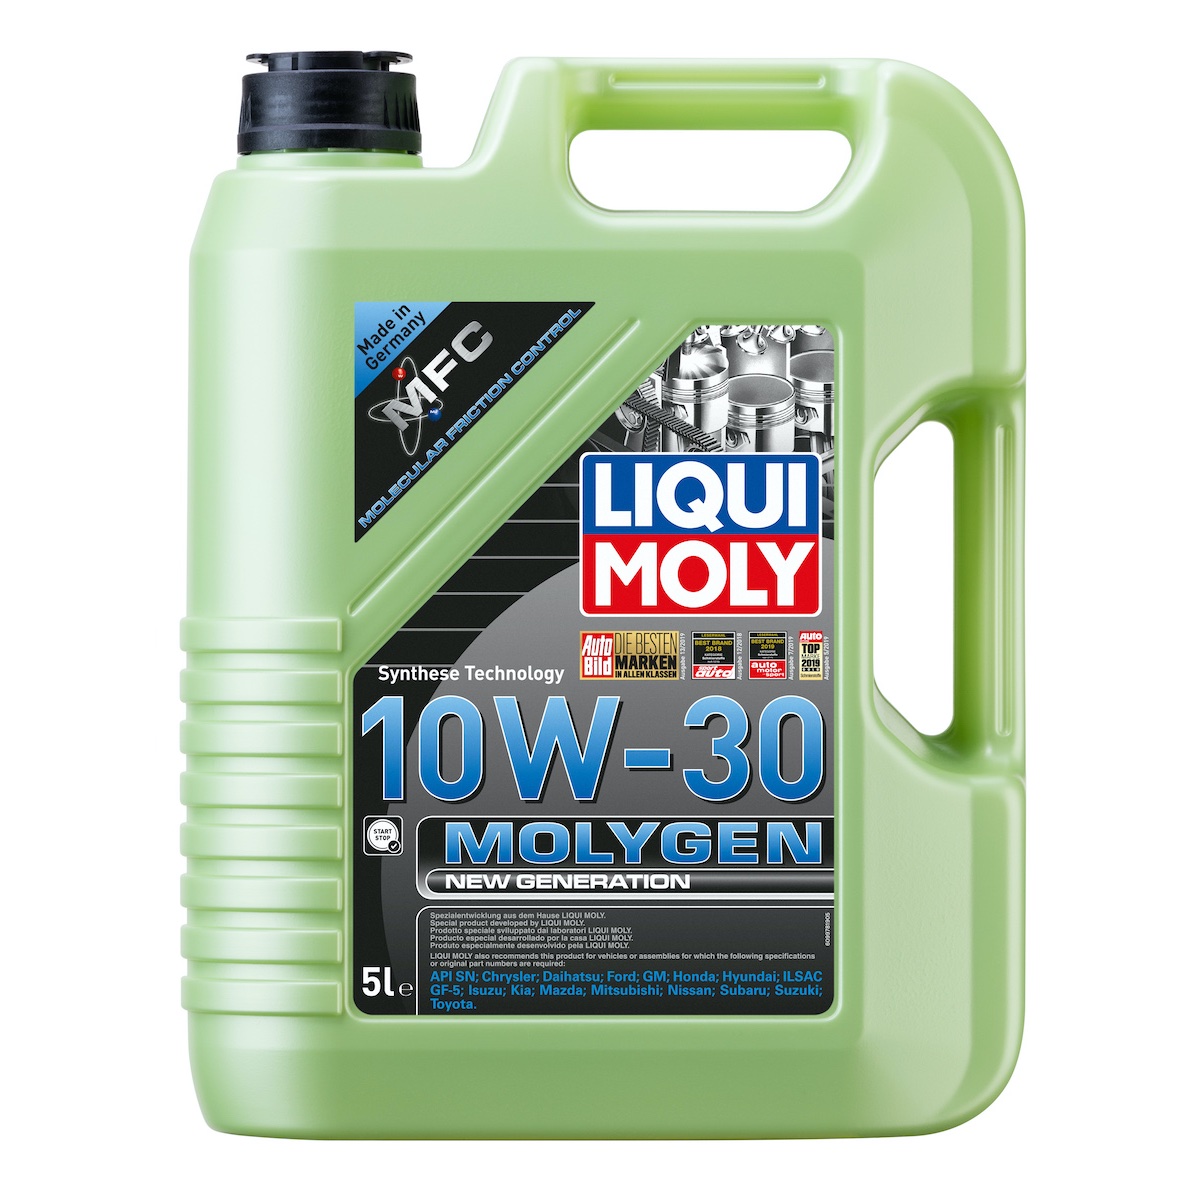 LIQUI MOLY 10W30 Motor Yağı Molygen New Generation 5 Litre (9978)